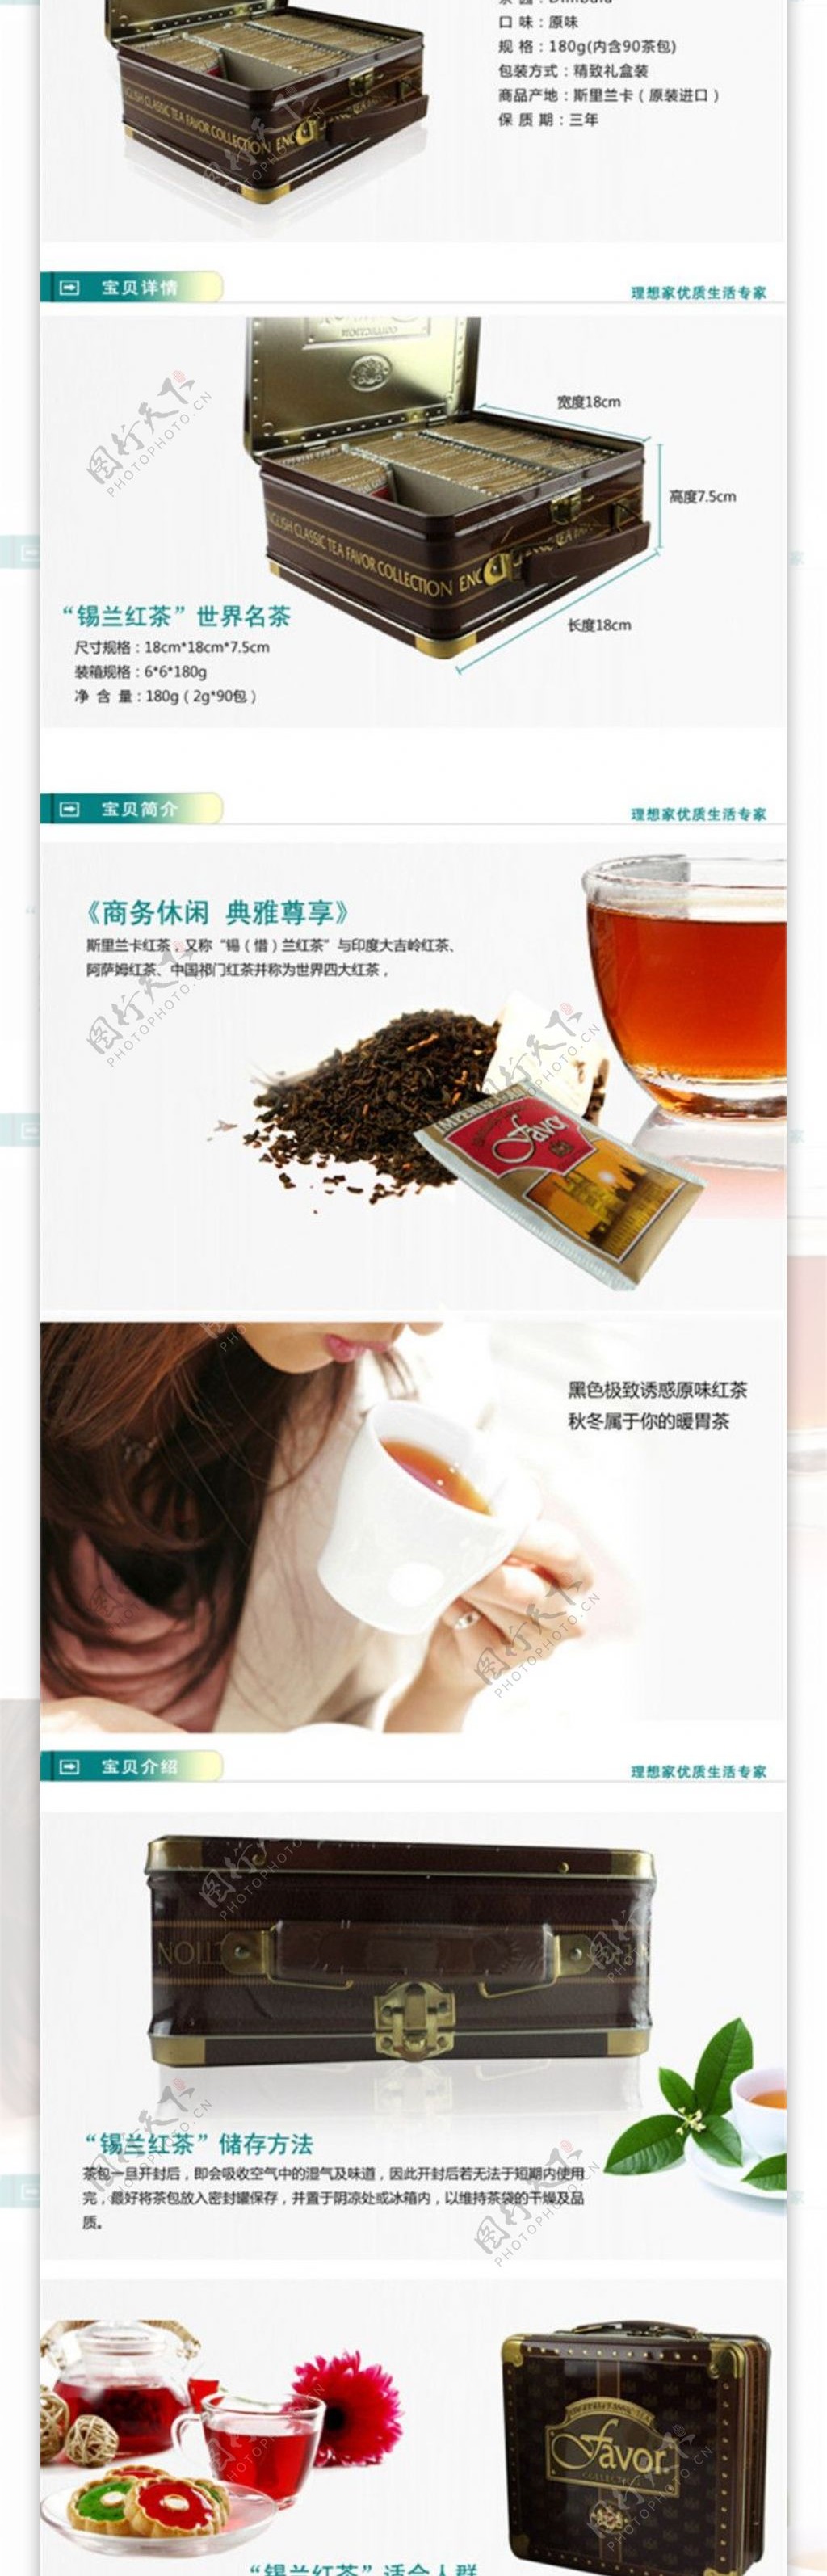 锡兰红茶茶详情页PSD免费下载